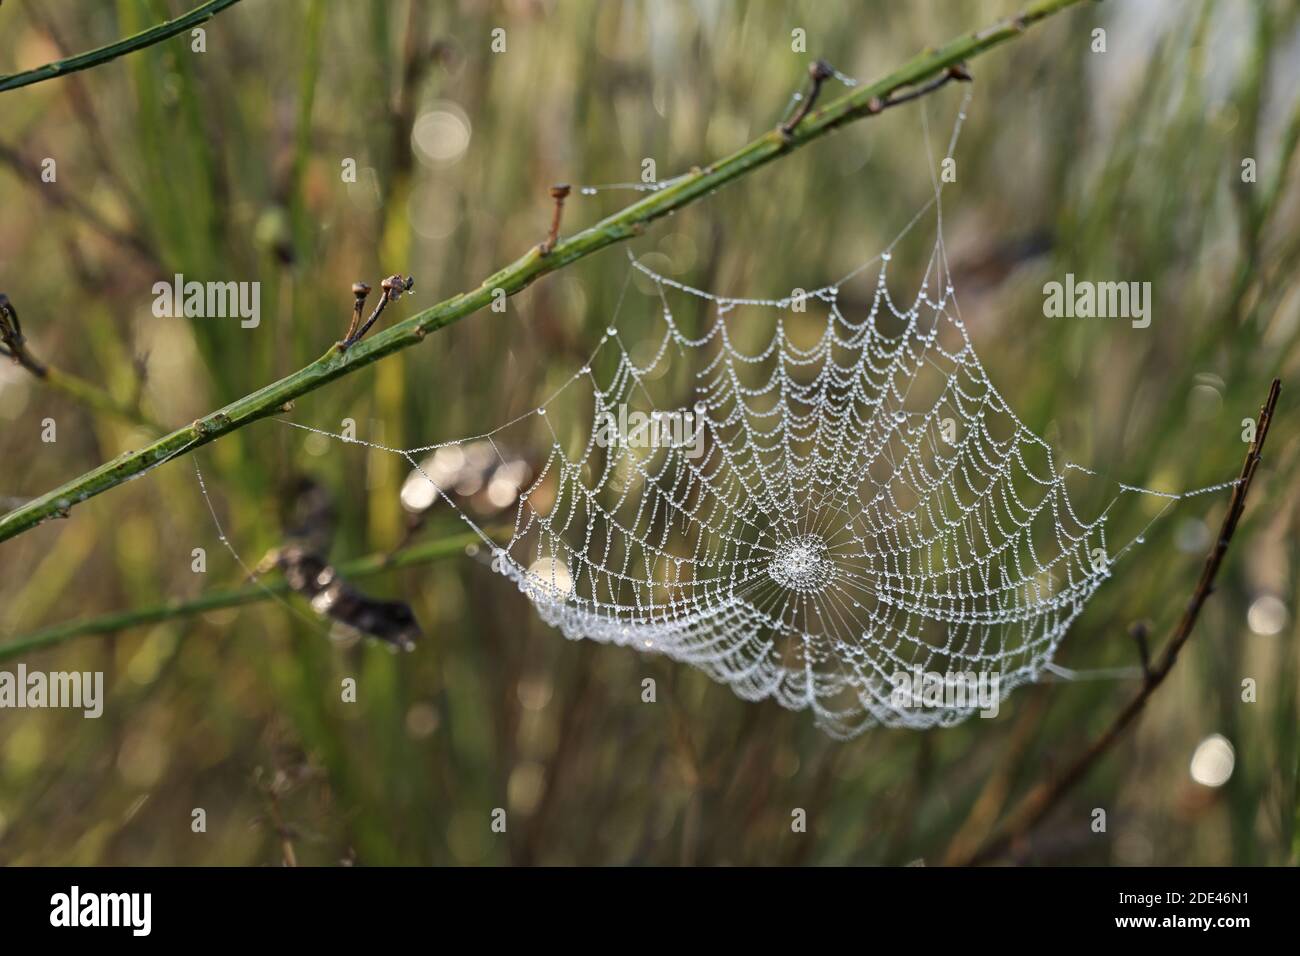 Spinnennetz mit Tau Tropfen zwischen den Stielen in einer grünen Wiese, ausgewählter Fokus, enge Schärfentiefe Stockfoto